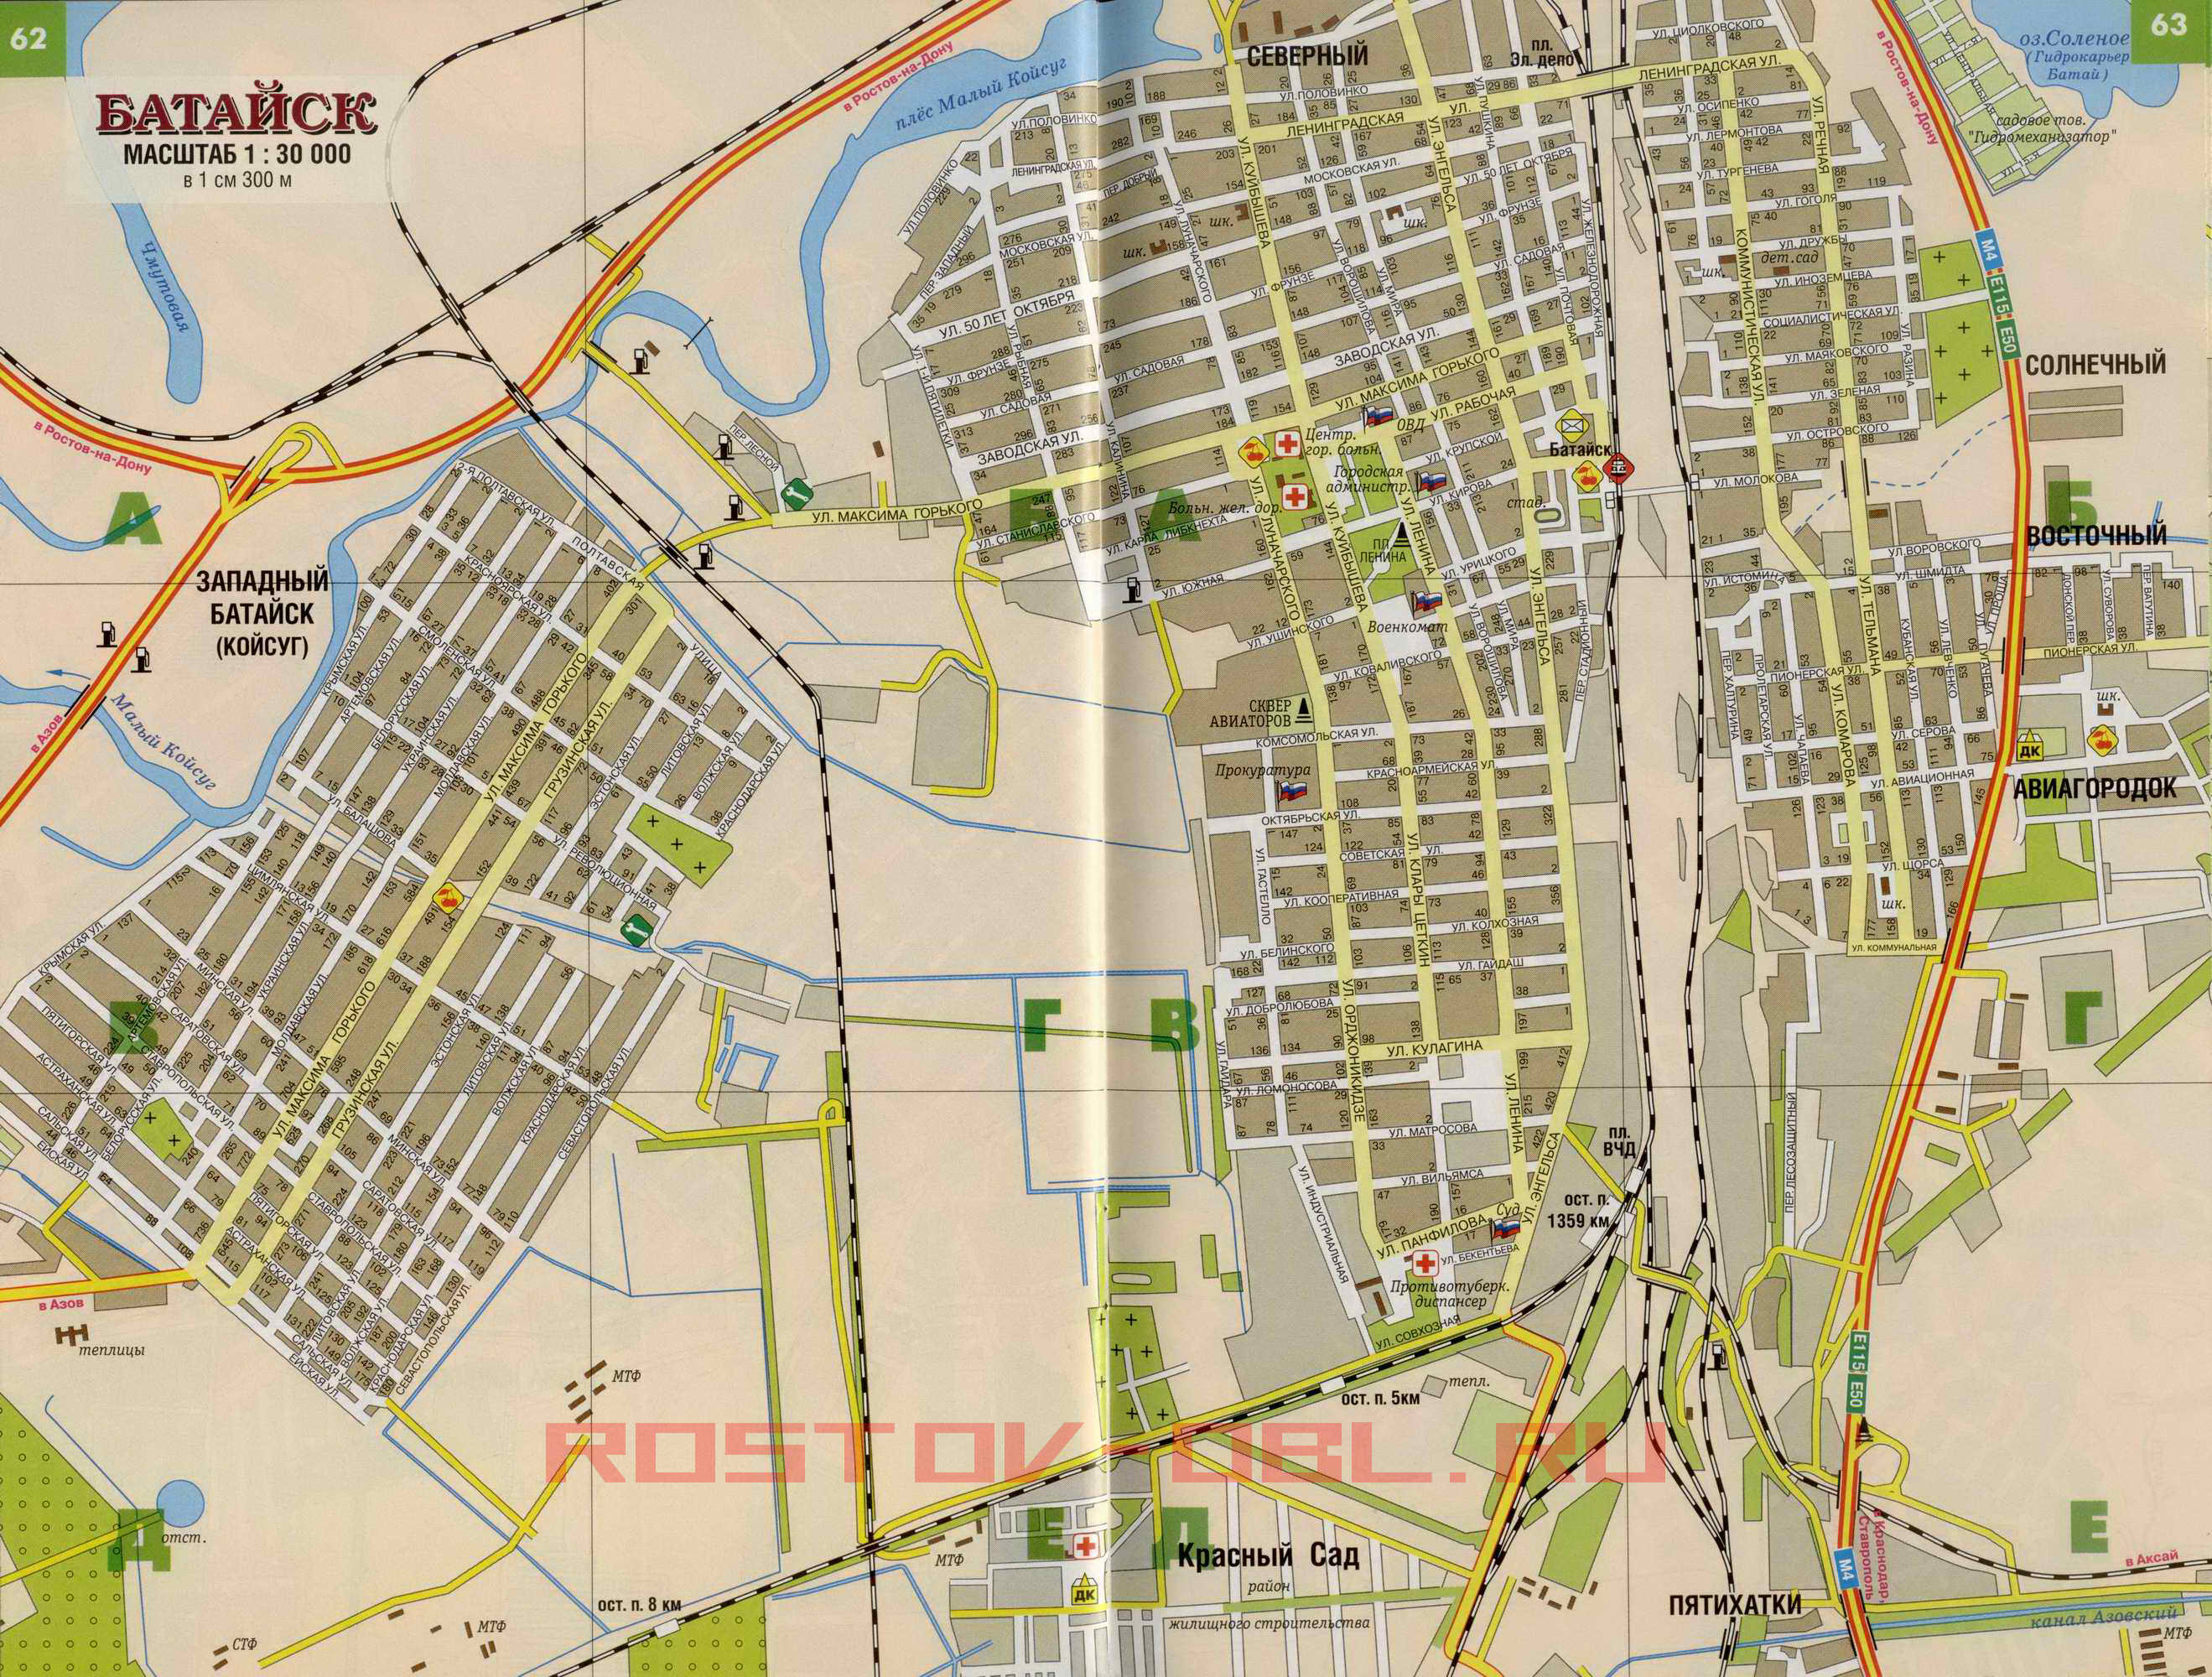 Автомобильная карта Батайска. Карта улиц Батайска с номерами домов, A0 - 